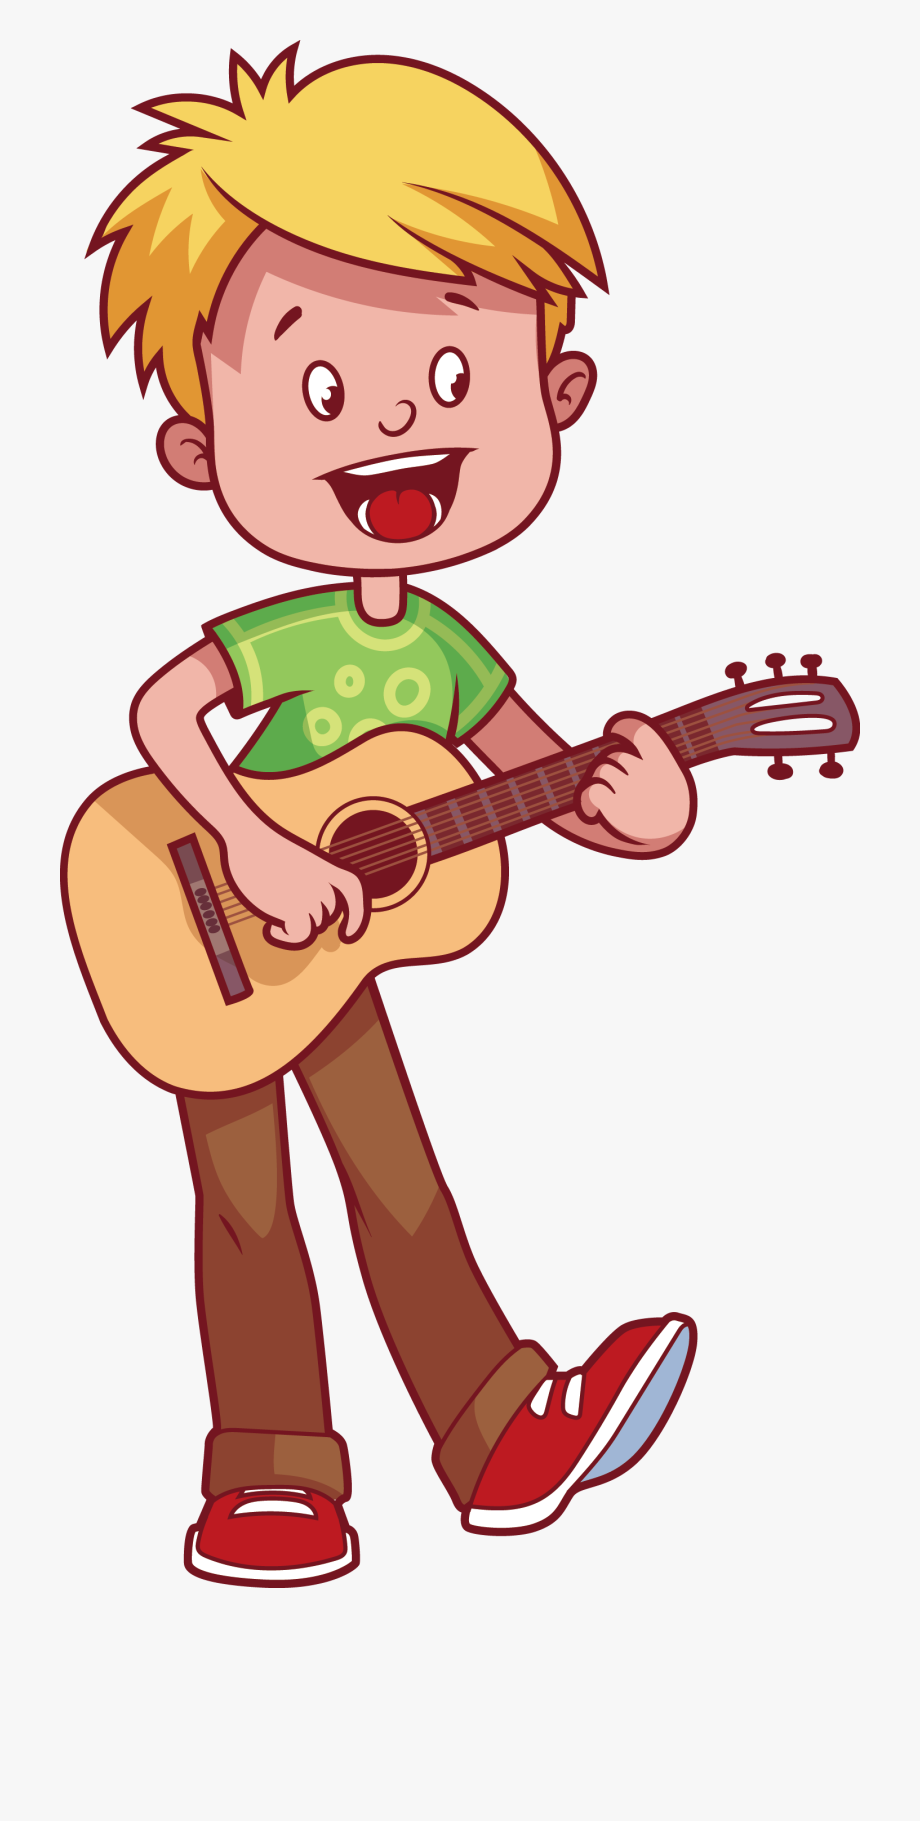 Boy playing guitar.